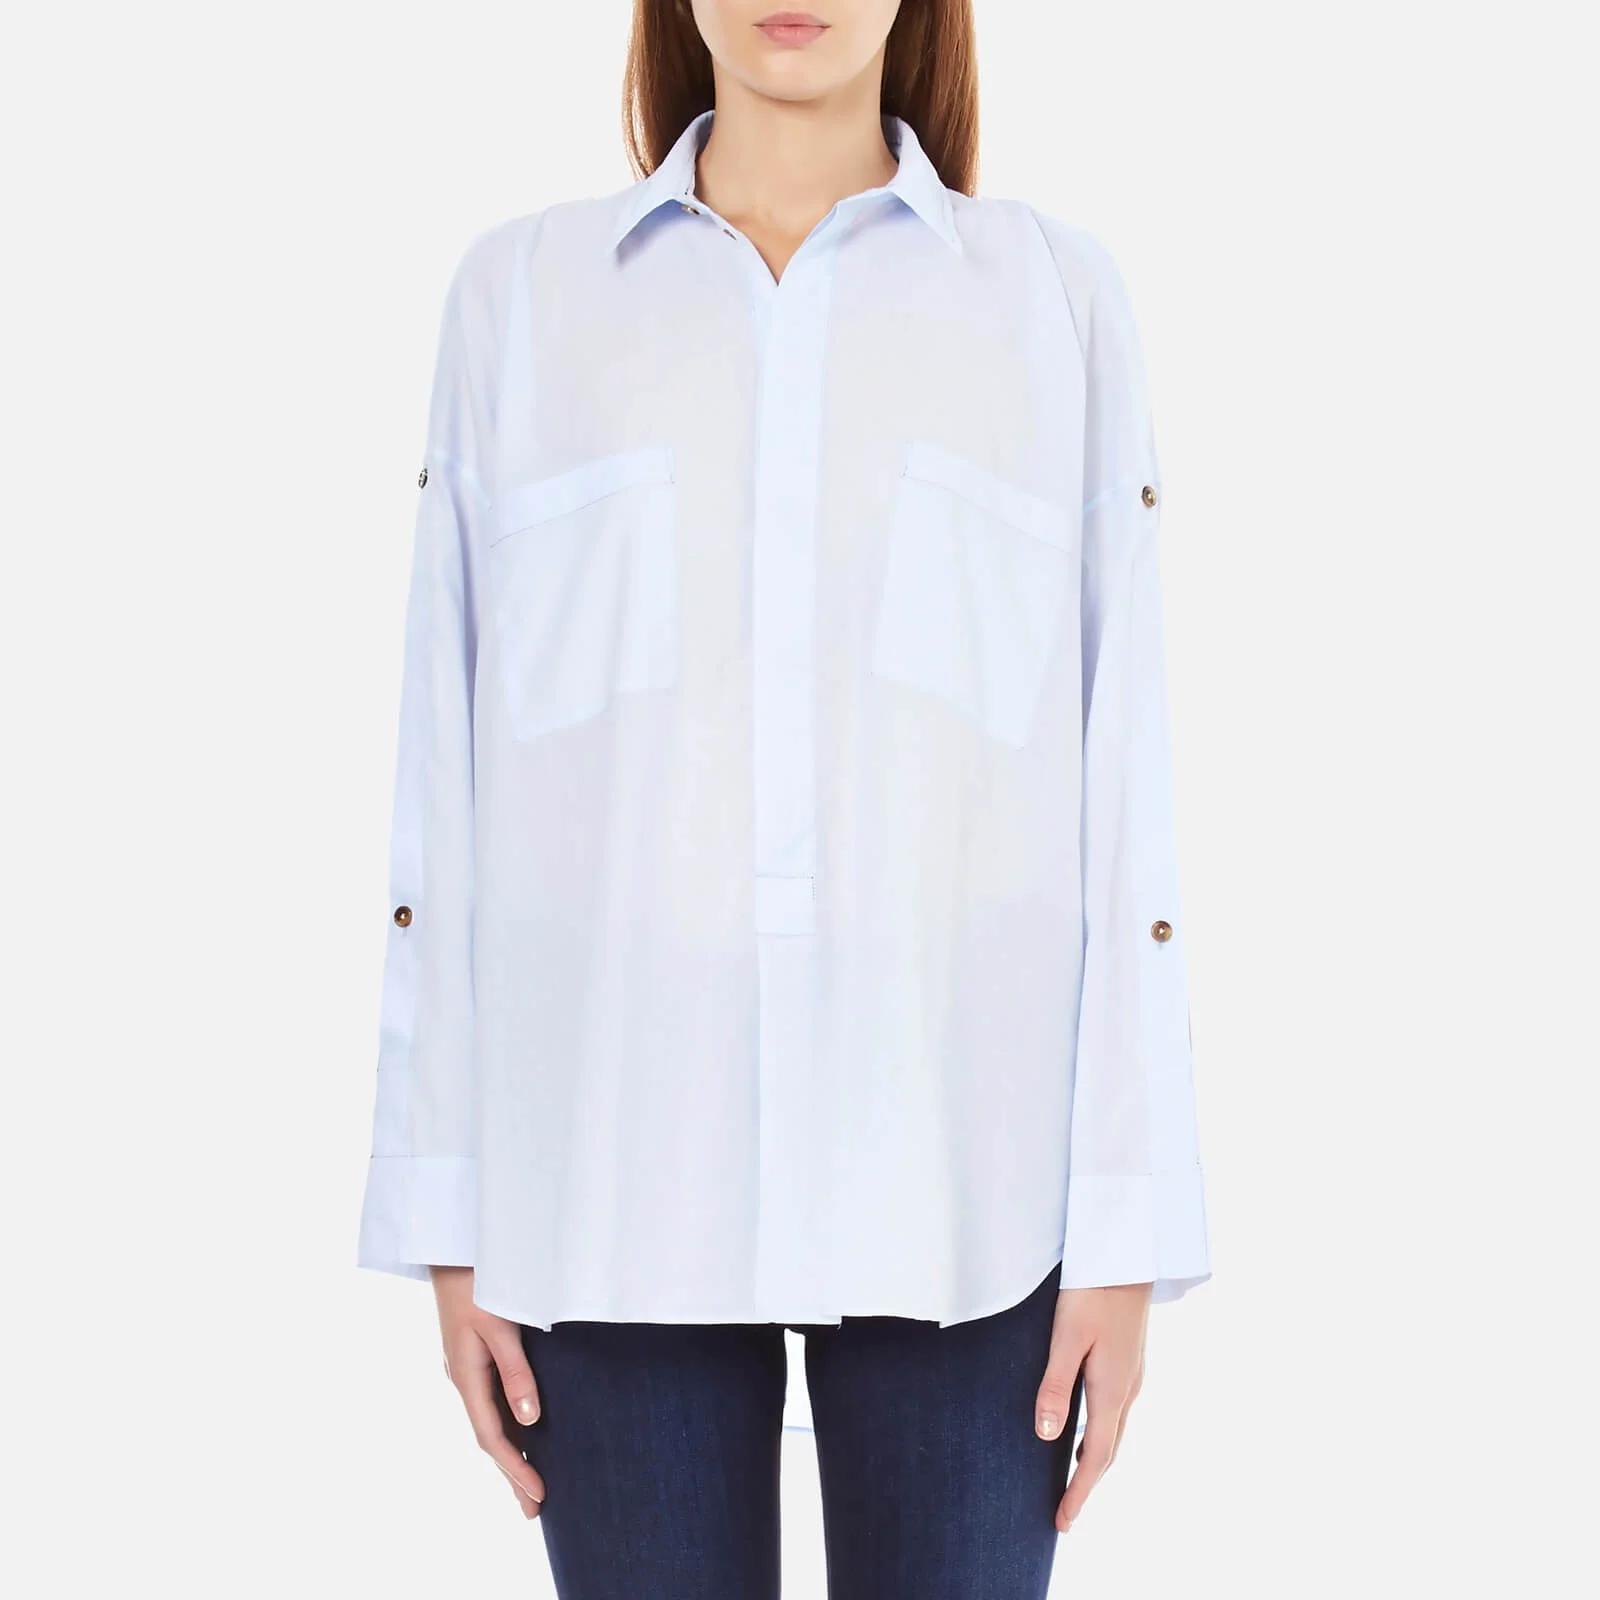 Helmut Lang Women's Lawn Cotton Shoulder Placket Shirt - Light Blue Image 1